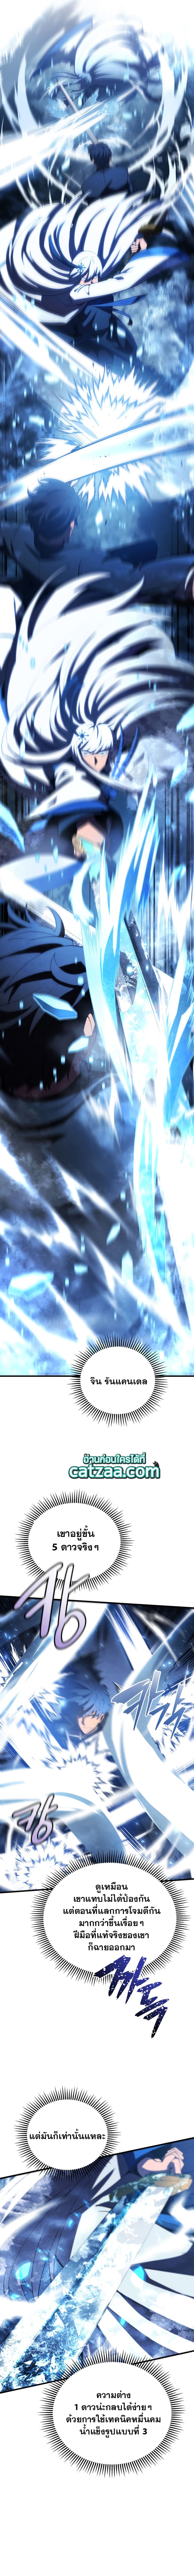 Swordmaster’s Youngest Son34 (9)